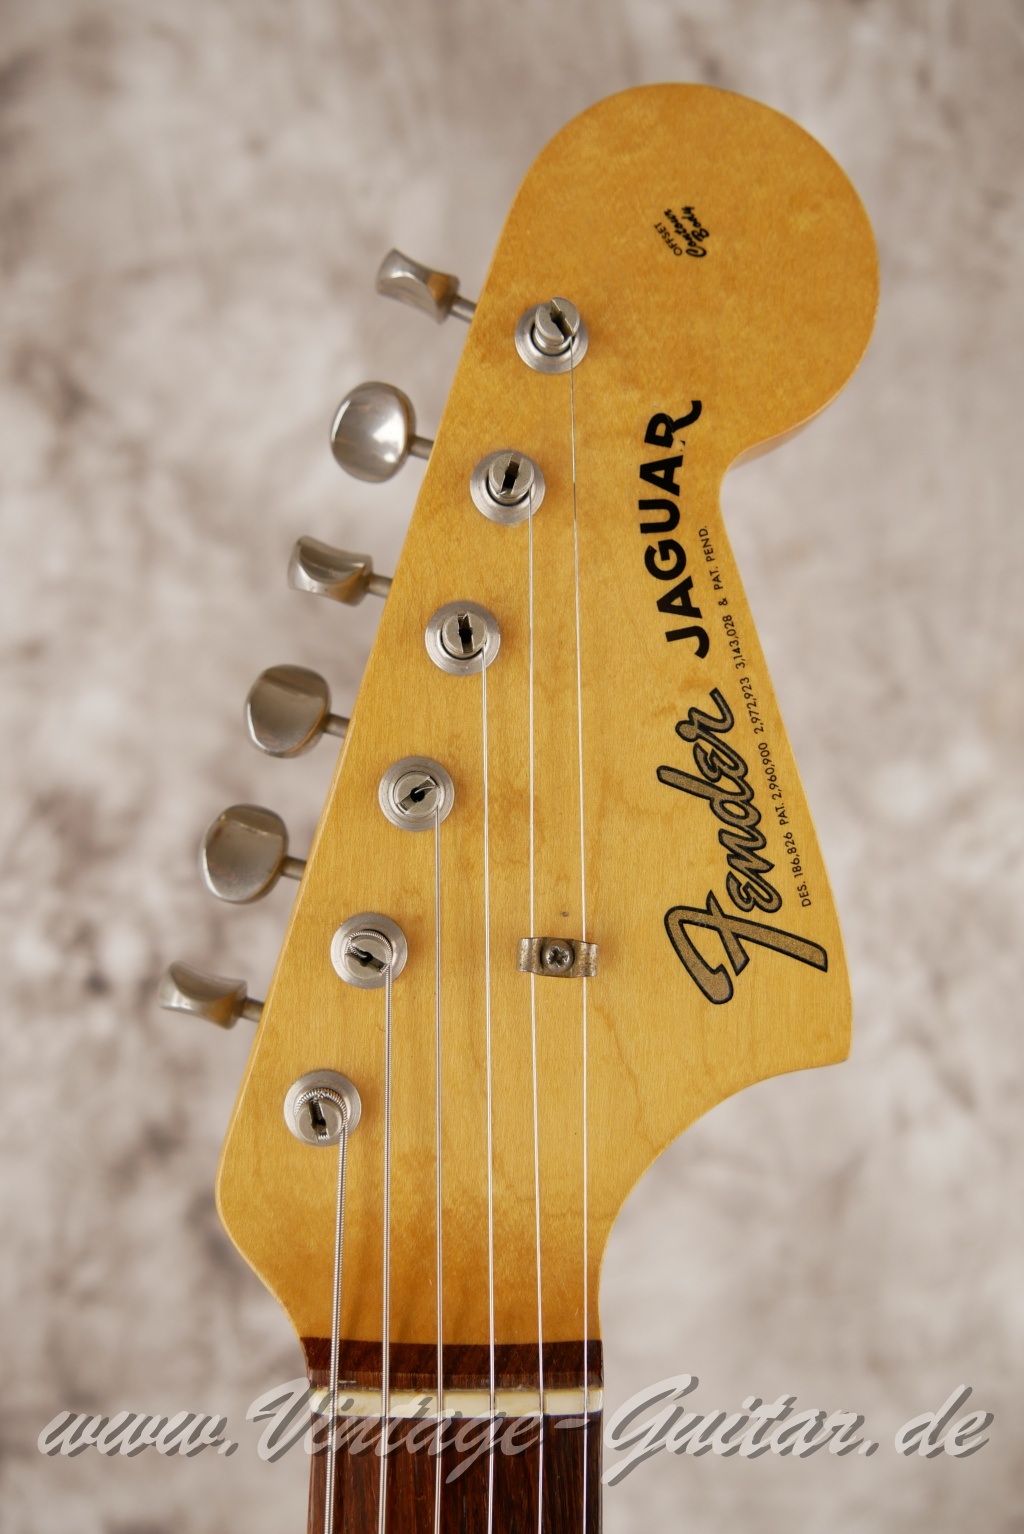 Fender_Jaguar_sunburst_1965_brown_case-003.JPG